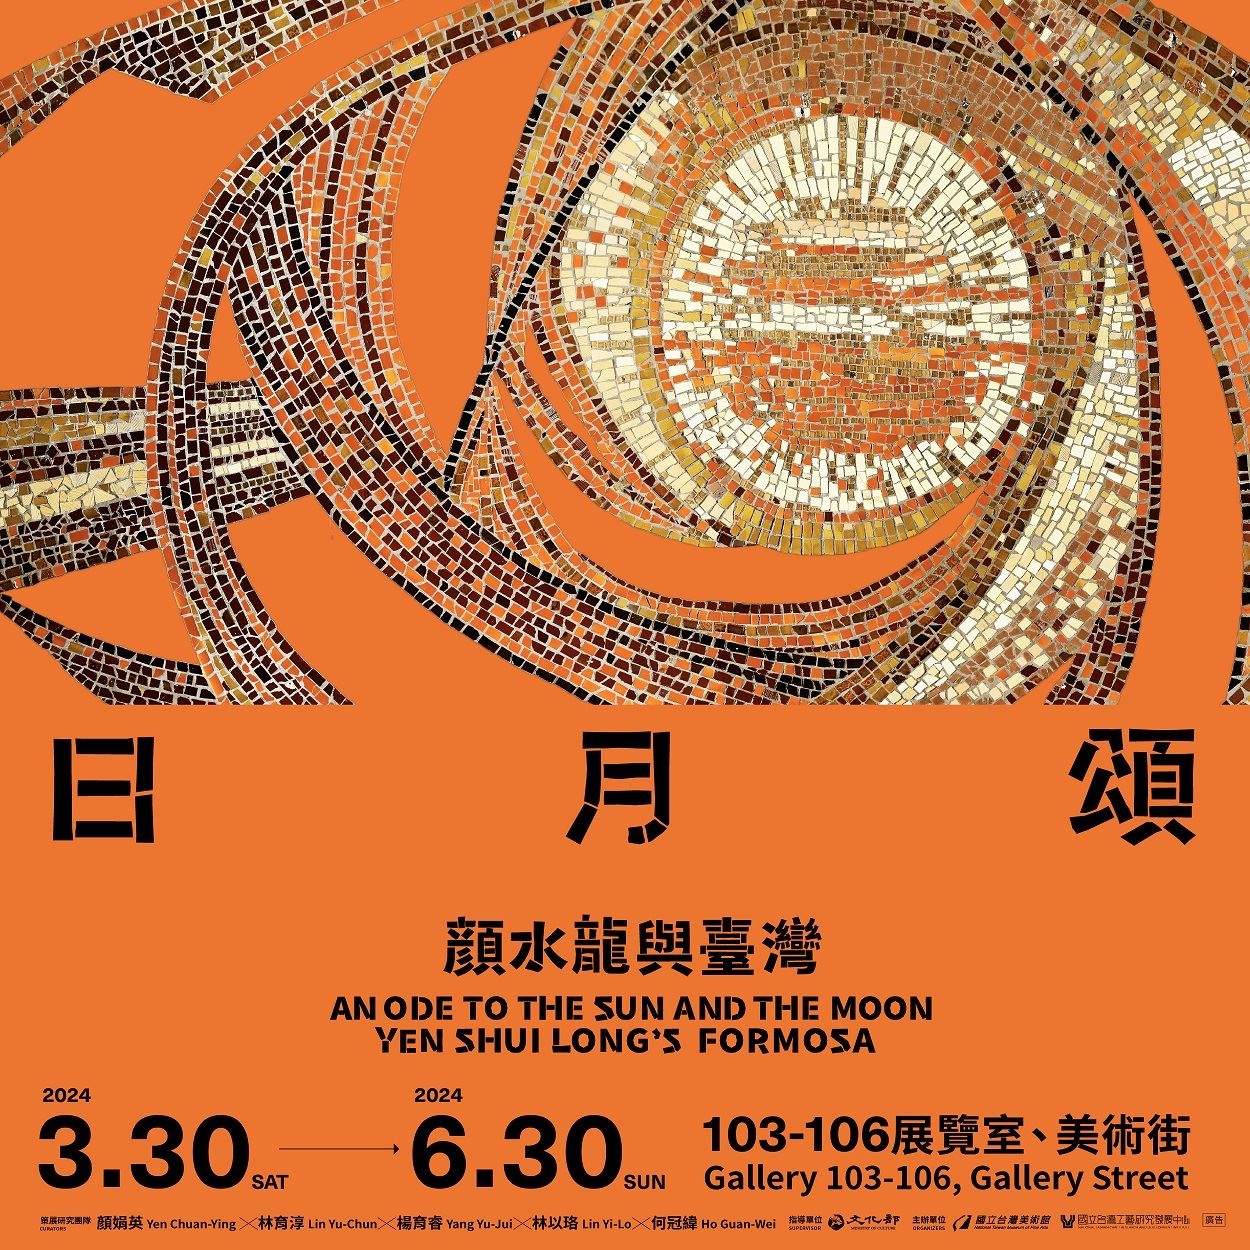 特別展「日月頌―顔水龍与台湾」